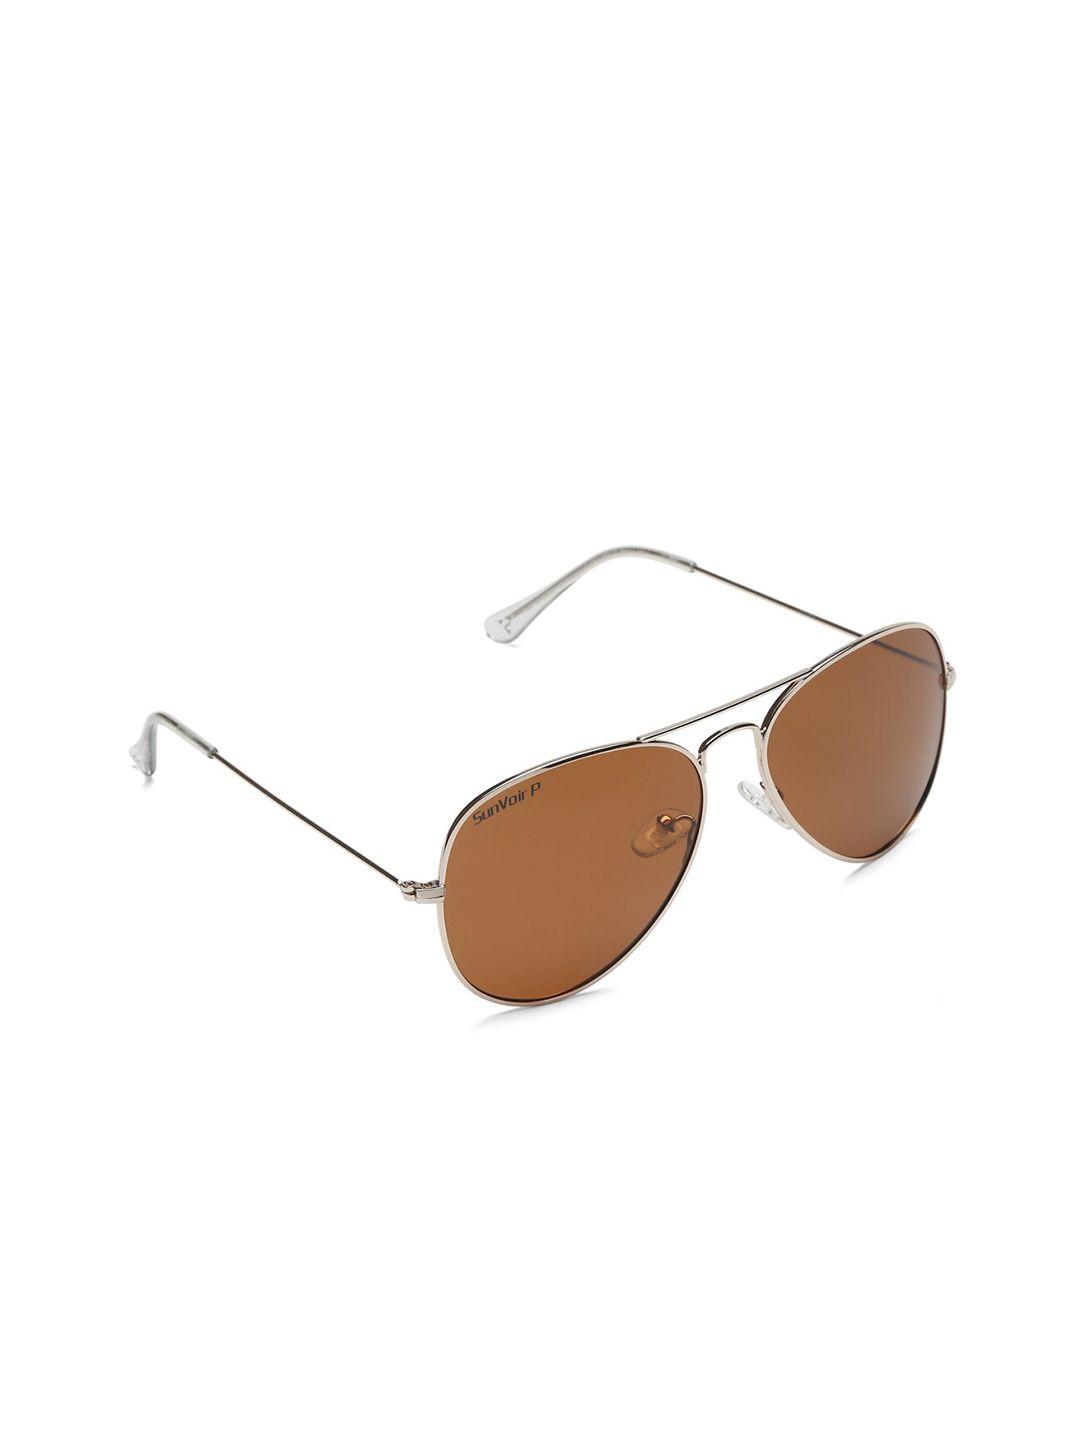 sunnies full rim aviator sunglasses with polarised lens sunnies-021-c2